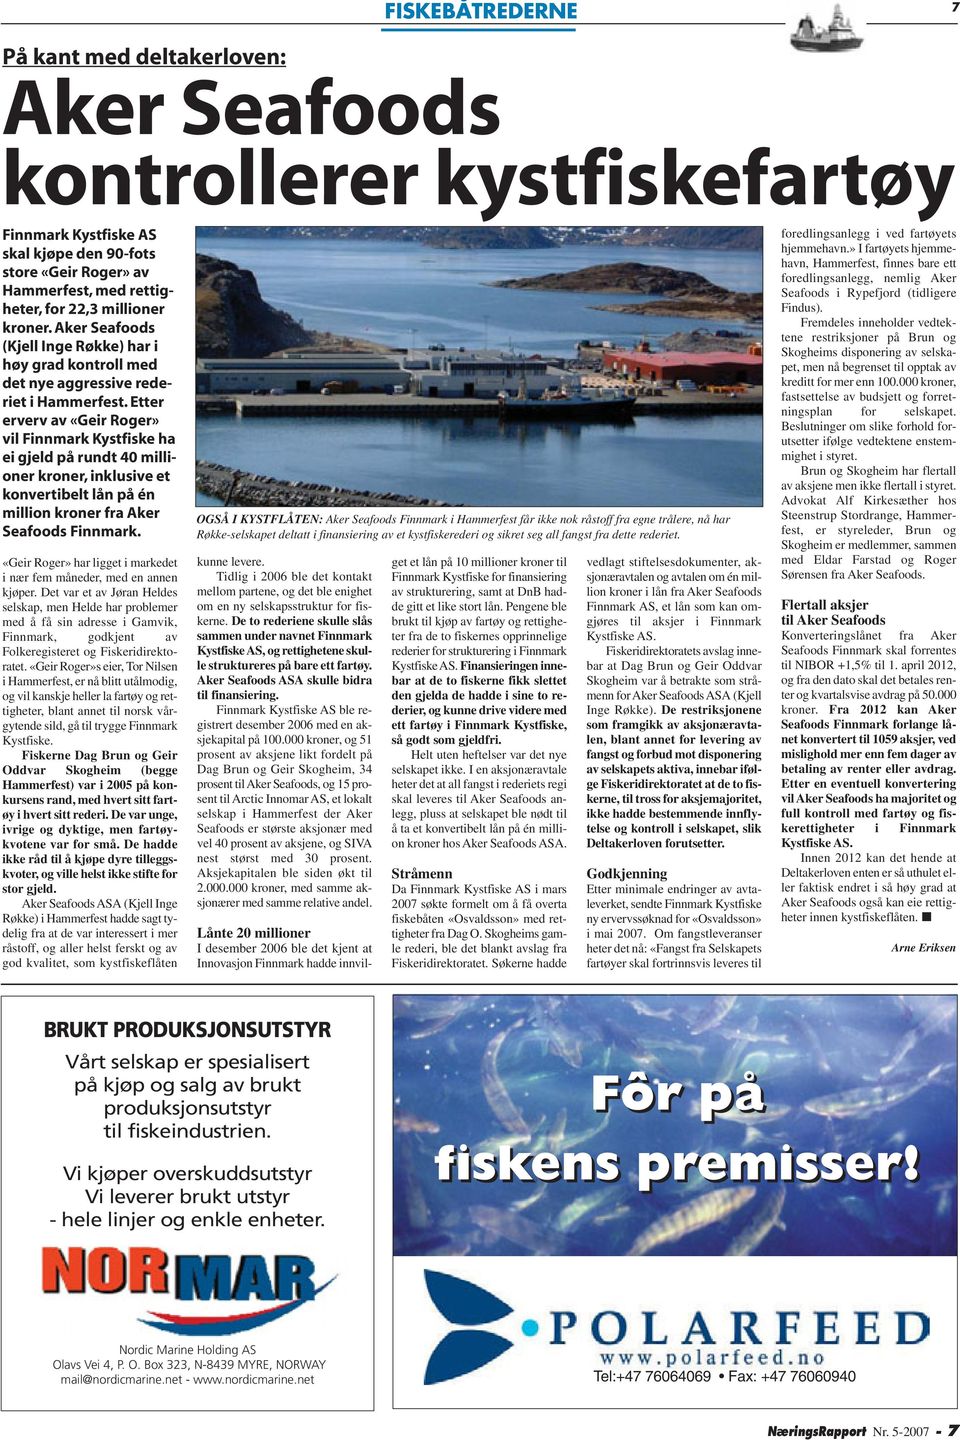 kroner. Aker Seafoods (Kjell Inge Røkke) har i høy grad kontroll med det nye aggressive rederiet i Hammerfest.